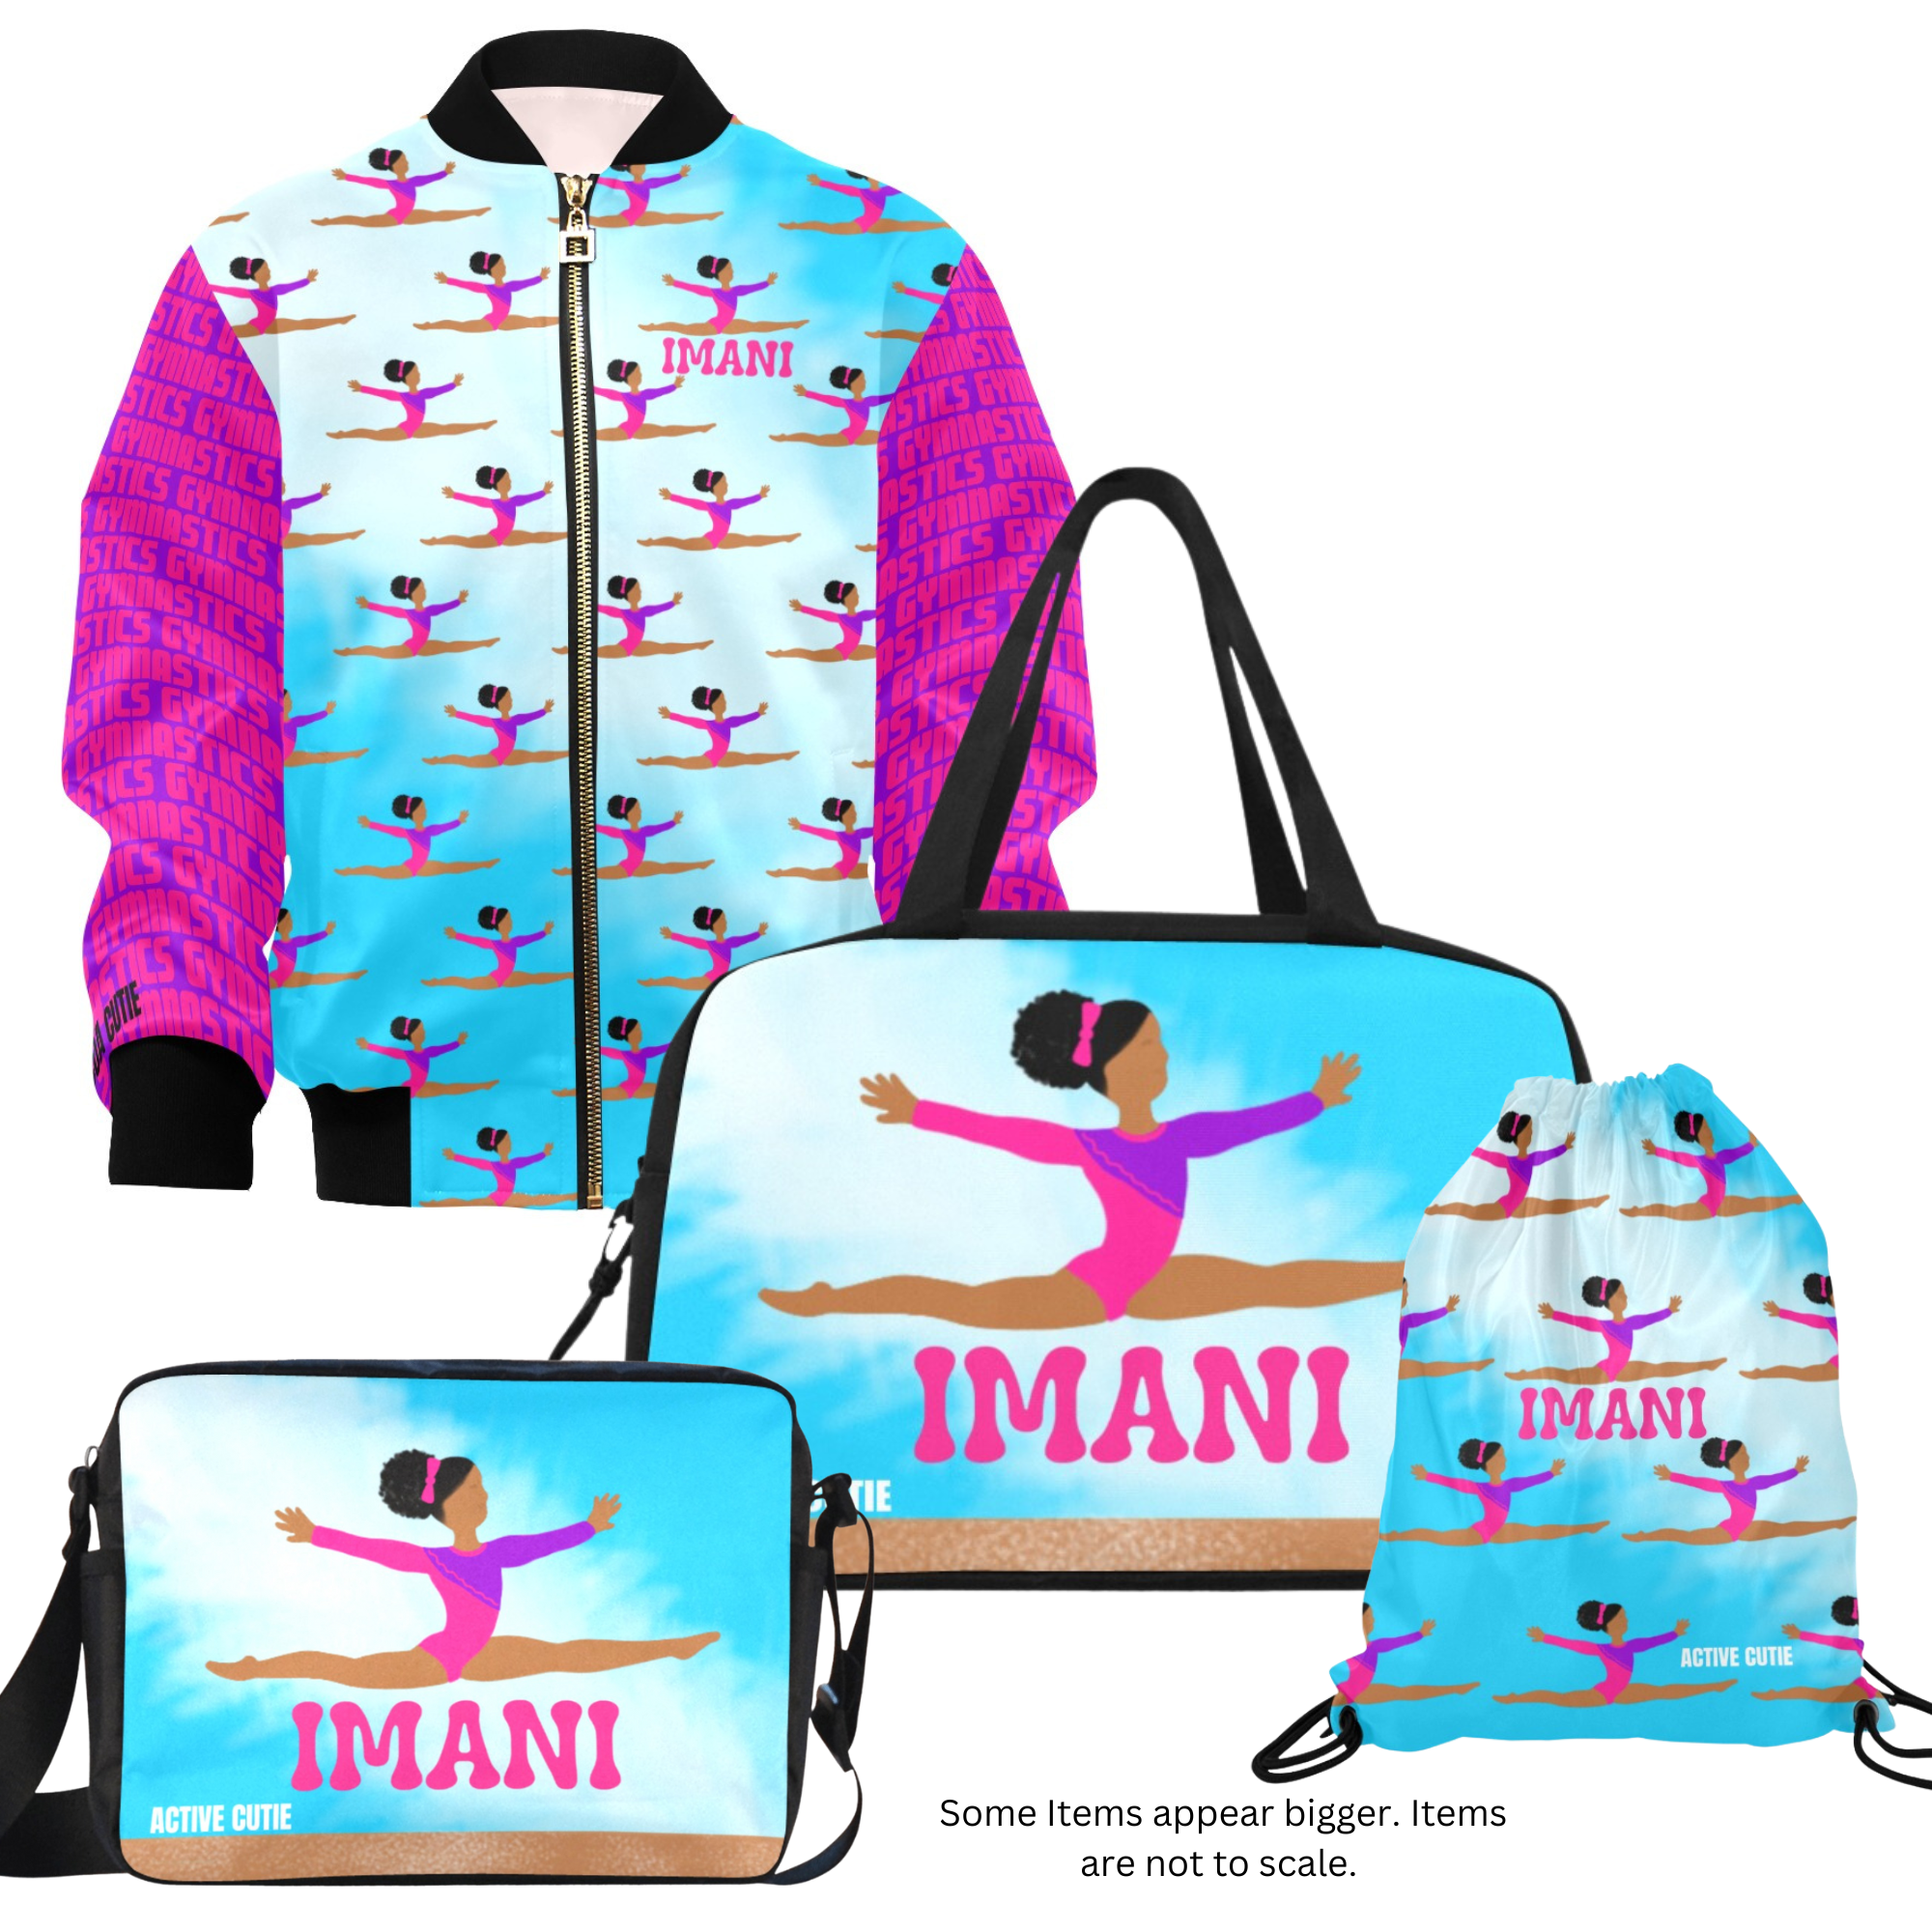 Personalized Gymnast Bag, Gym Bag, Girls Bag, Gymnastics Bag, Kids Bag,  Cinch Bag, Glitter Bag, Drawstring Bag, Ring Balance, Heart Design, - Etsy